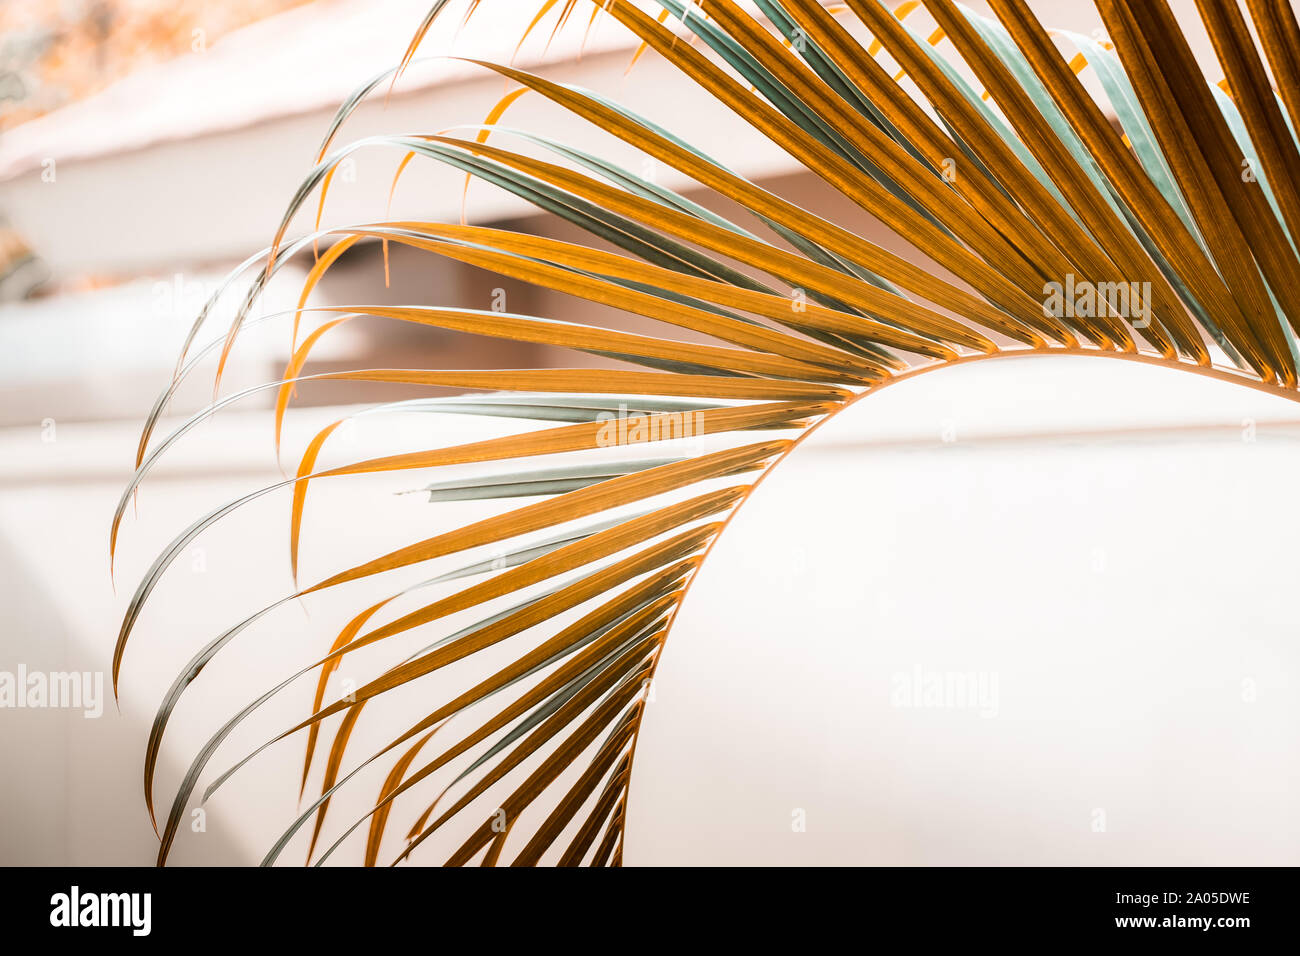 Palm tree lascia contro il muro bianco. Caldo arancio colori, tonalità di terra, creative minimalismo colorato. Copiare lo spazio per testo, orizzontale Foto Stock